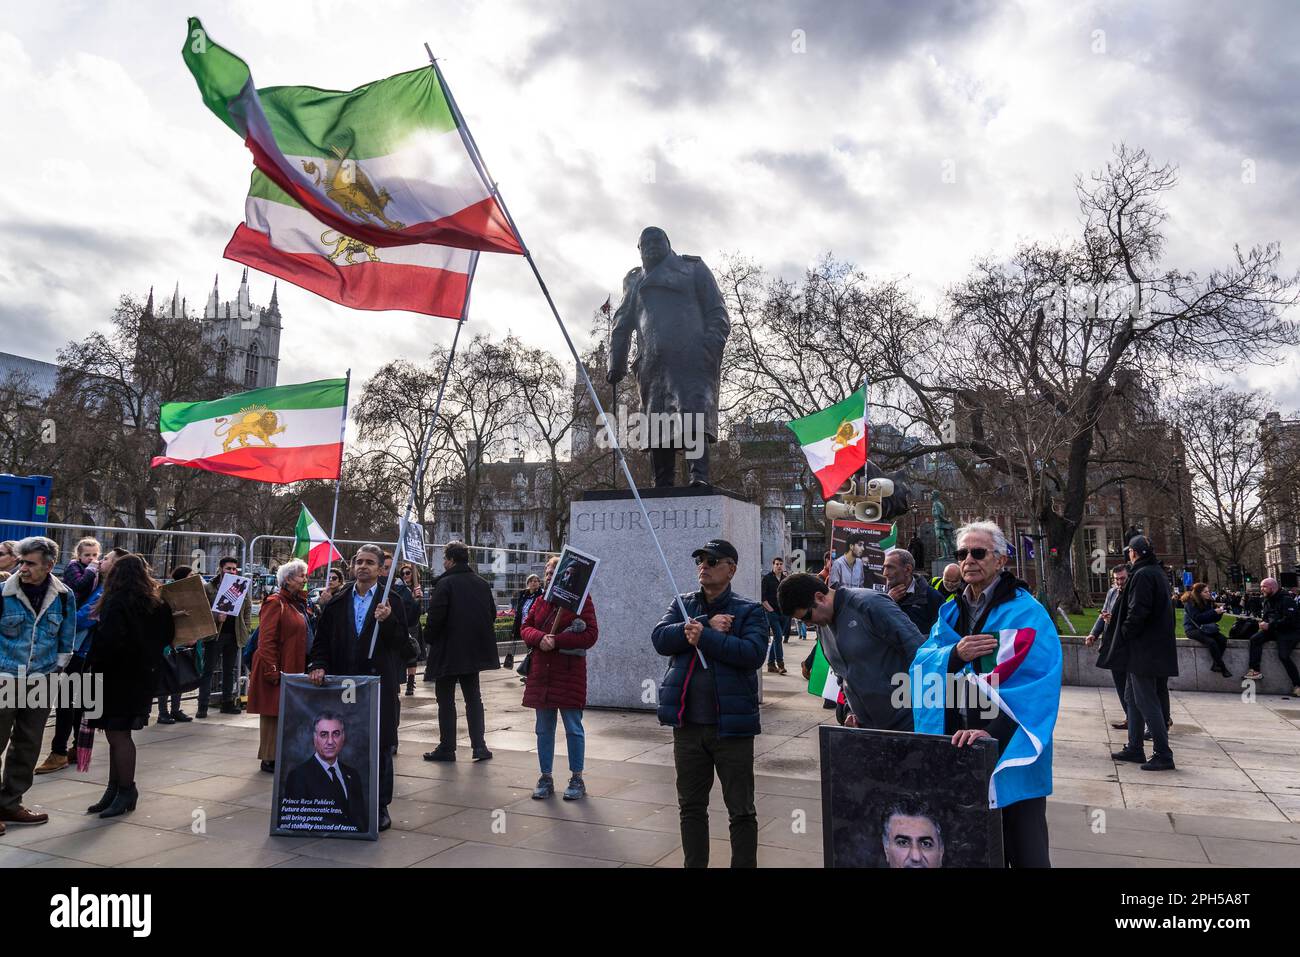 Protesta pro-democrazia iraniana contro il governo islamico autocratico dell'Iran nella Piazza del Parlamento di fronte alla statua di Churchill, Londra, Inghilterra Foto Stock